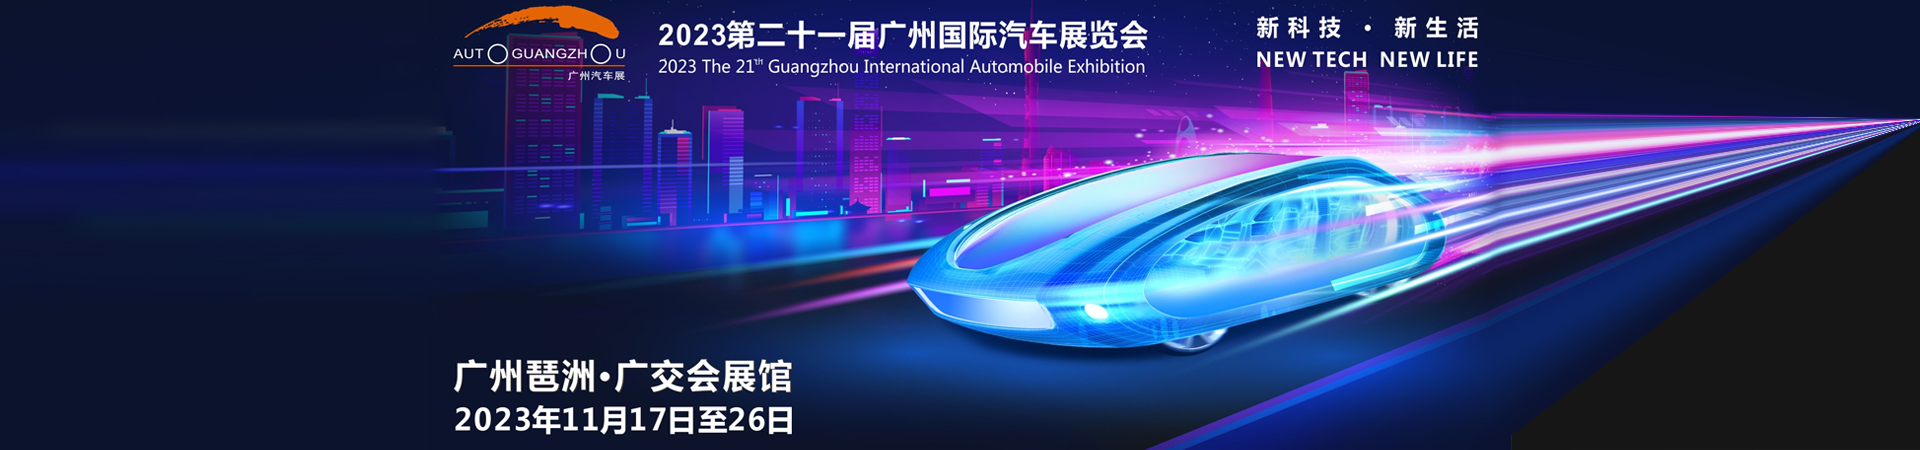 2023第二十一届广州国际汽车展览会,汽车焦点网,汽车导购,汽车测评,汽车新闻,汽车专题,新车推荐